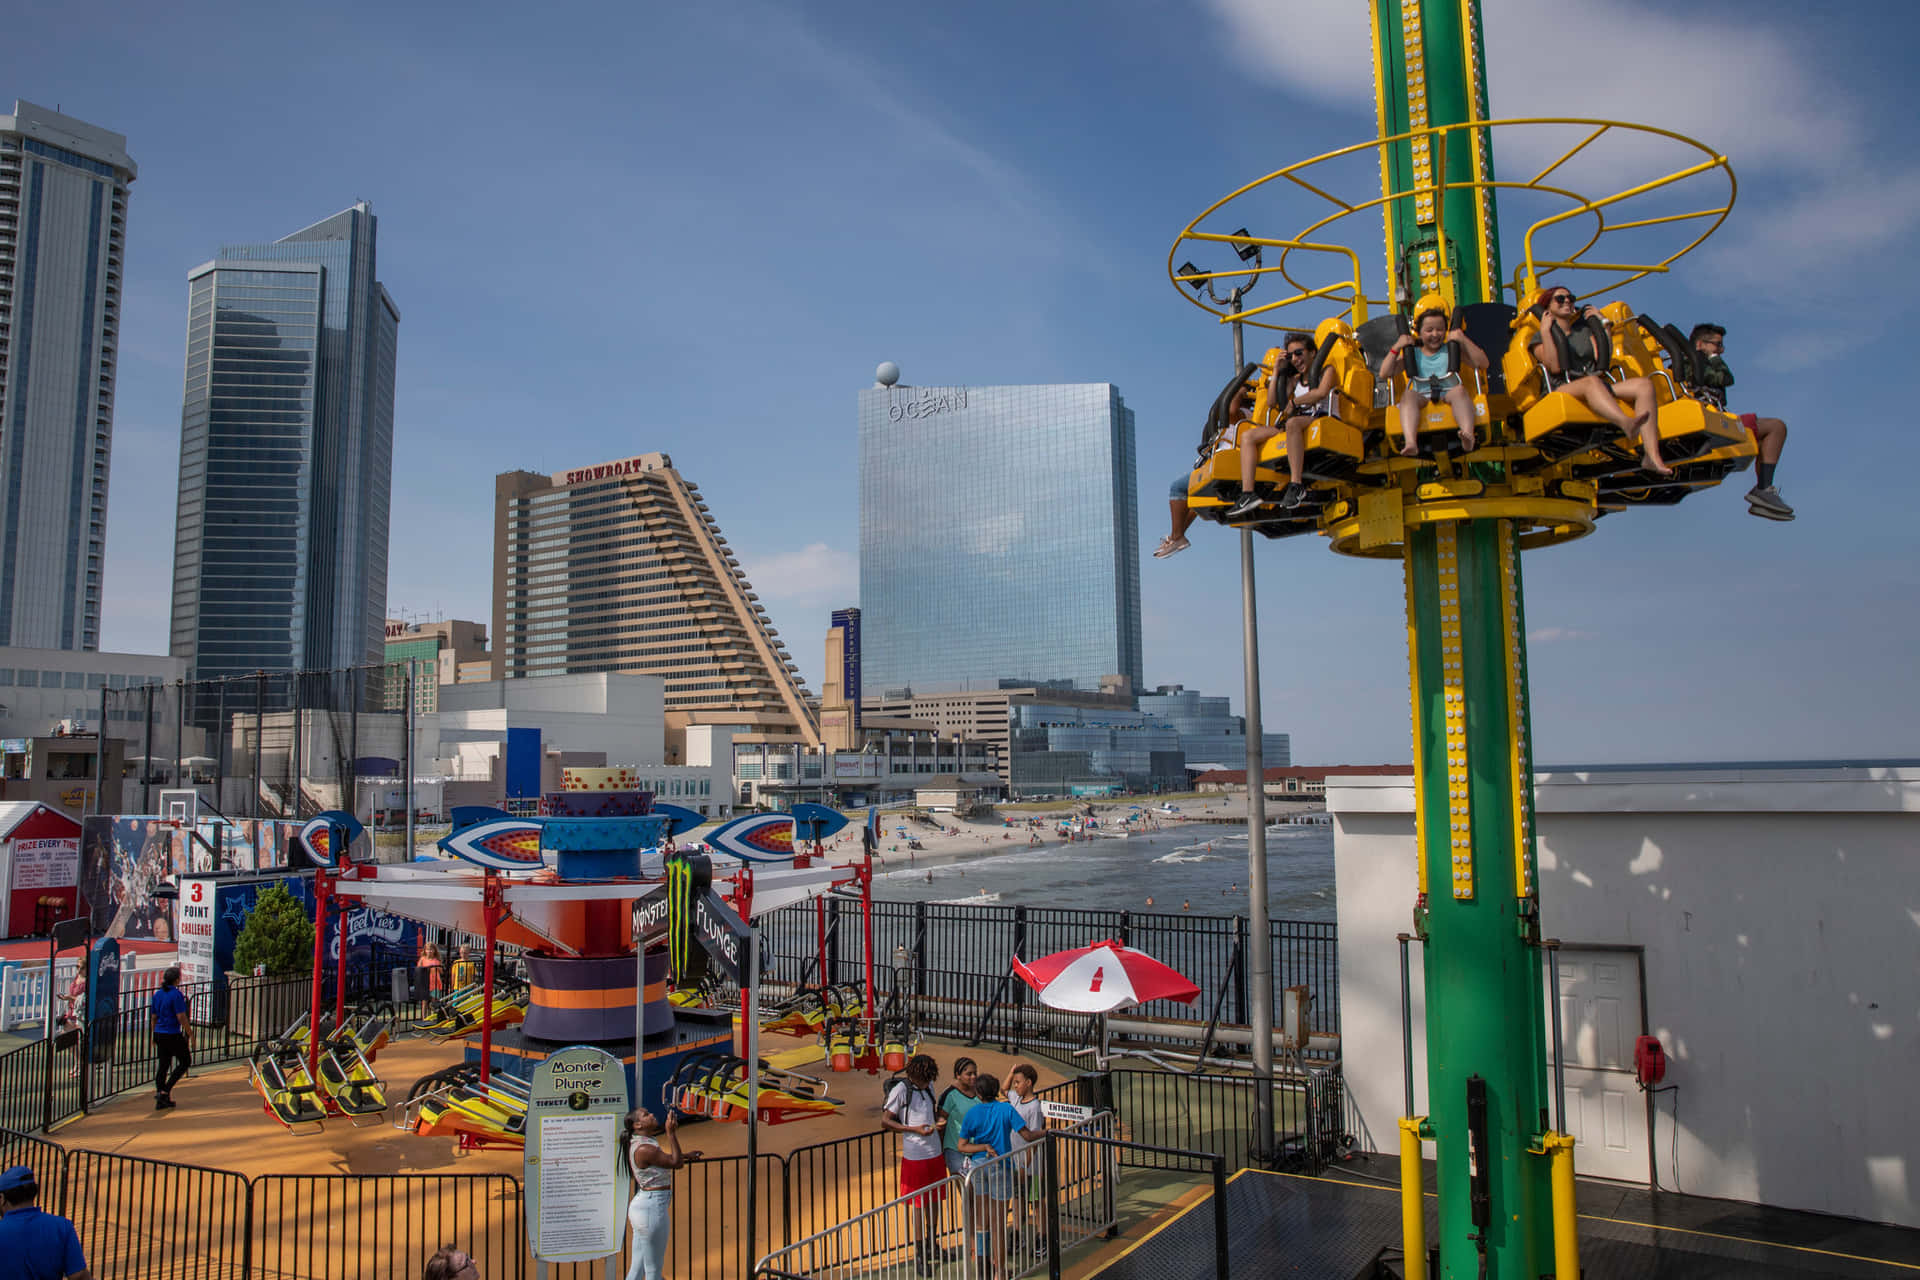 Imagende Las Atracciones Del Parque De Diversiones De Atlantic City.